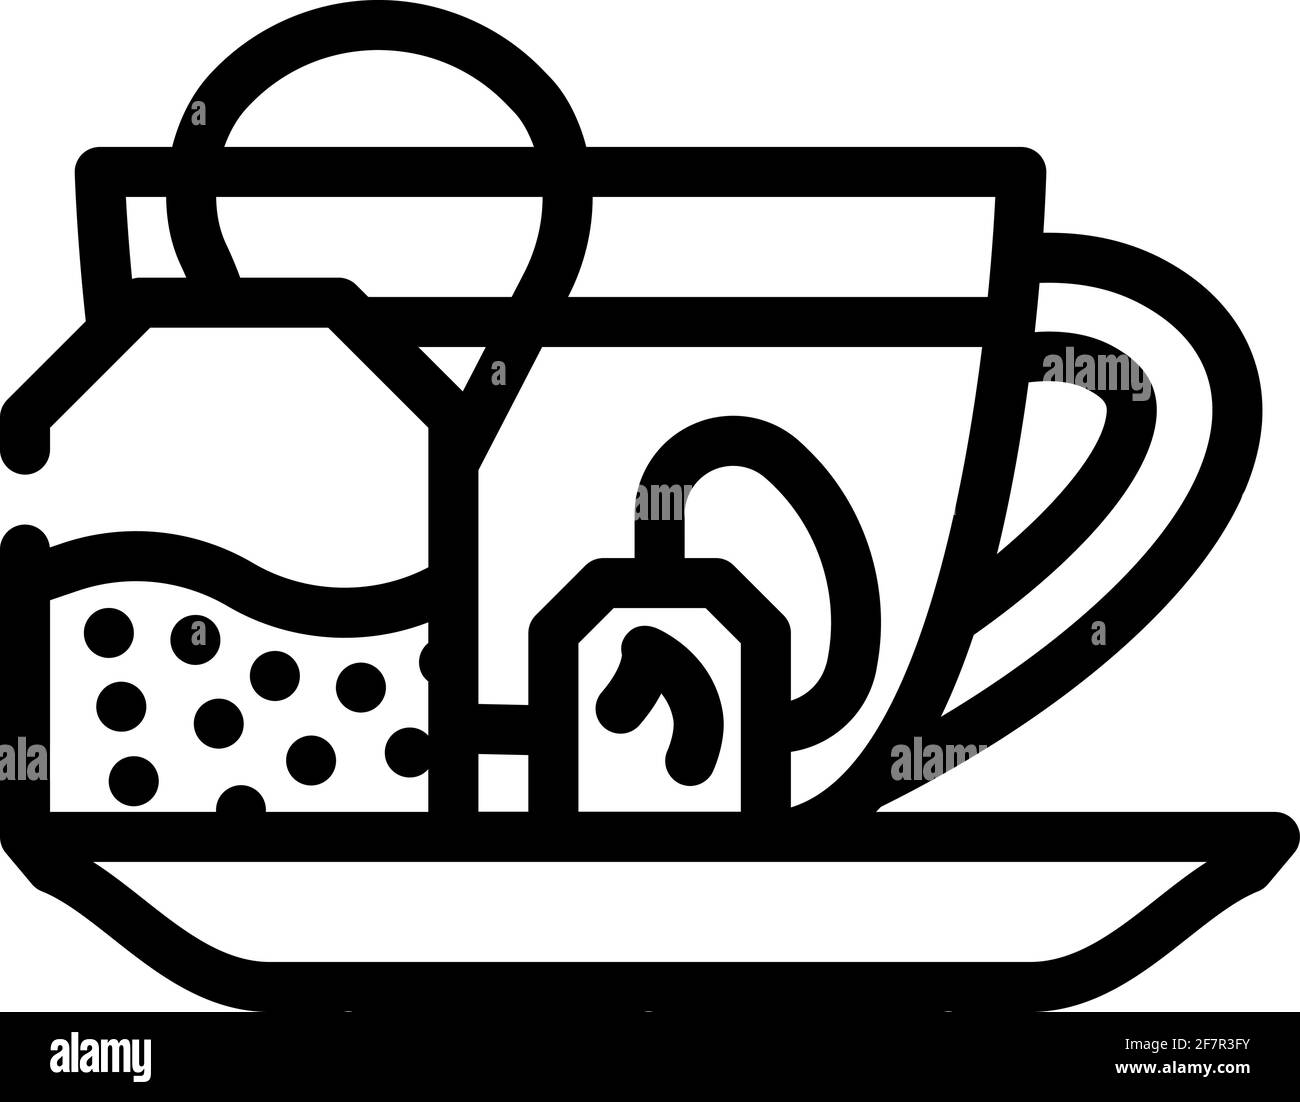 immagine vettoriale dell'icona della linea del tè che brucia il grasso Illustrazione Vettoriale